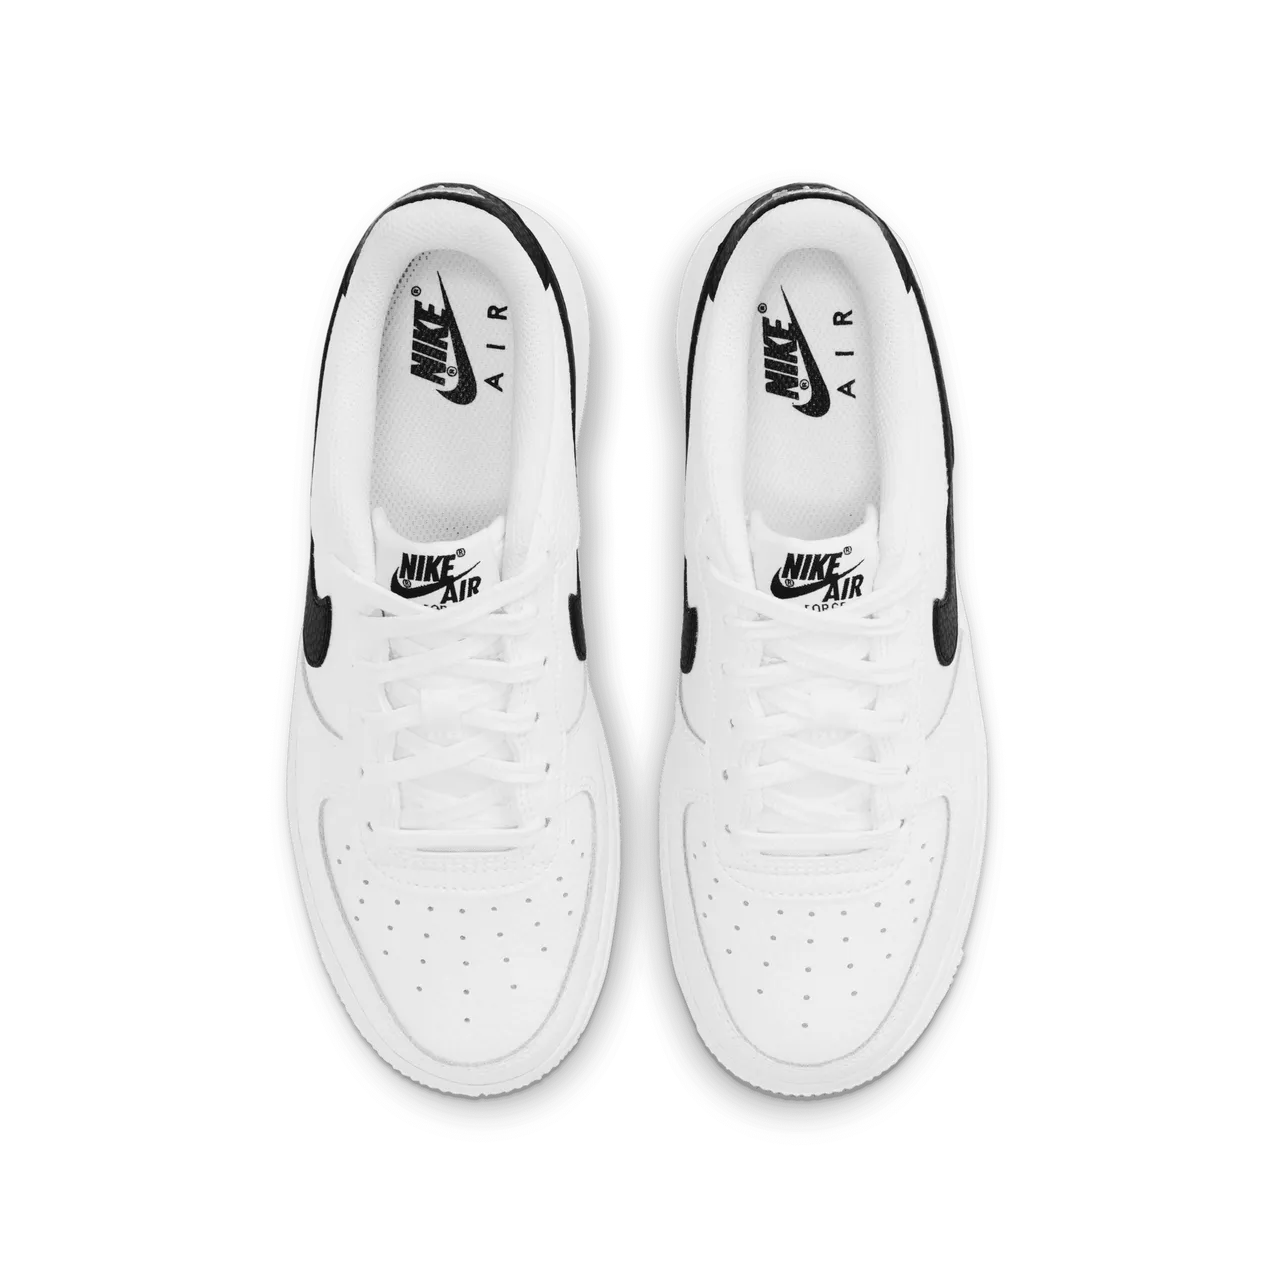 Nike Air Force 1 Schuh für ältere Kinder - Weiß